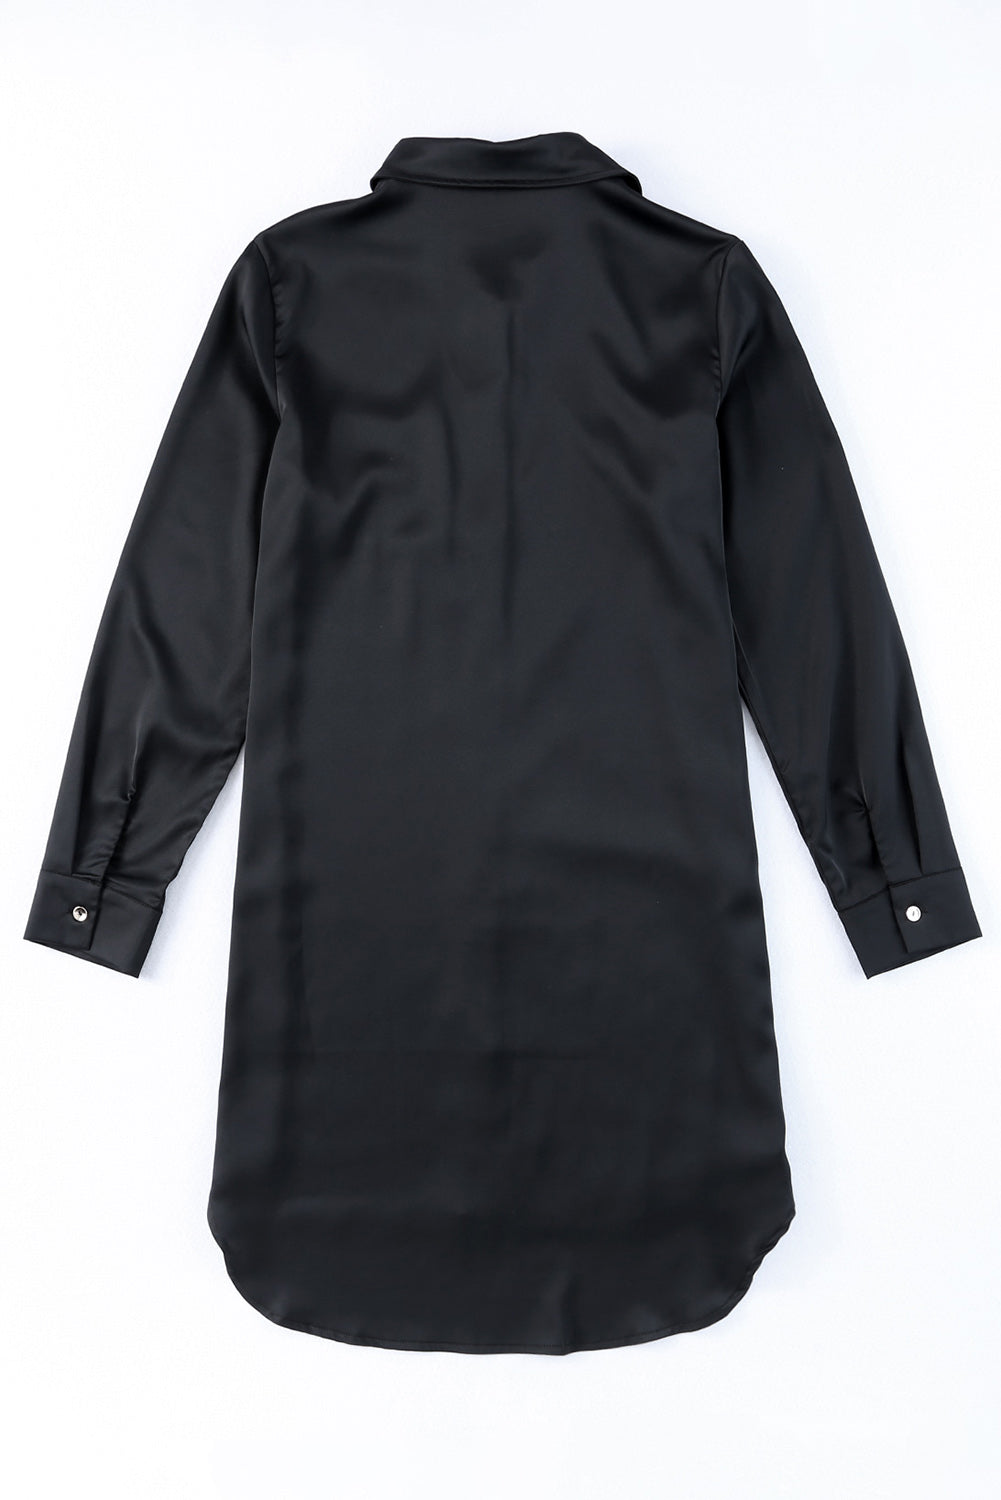 Crna haljina košulje s džepovima i šljokicama